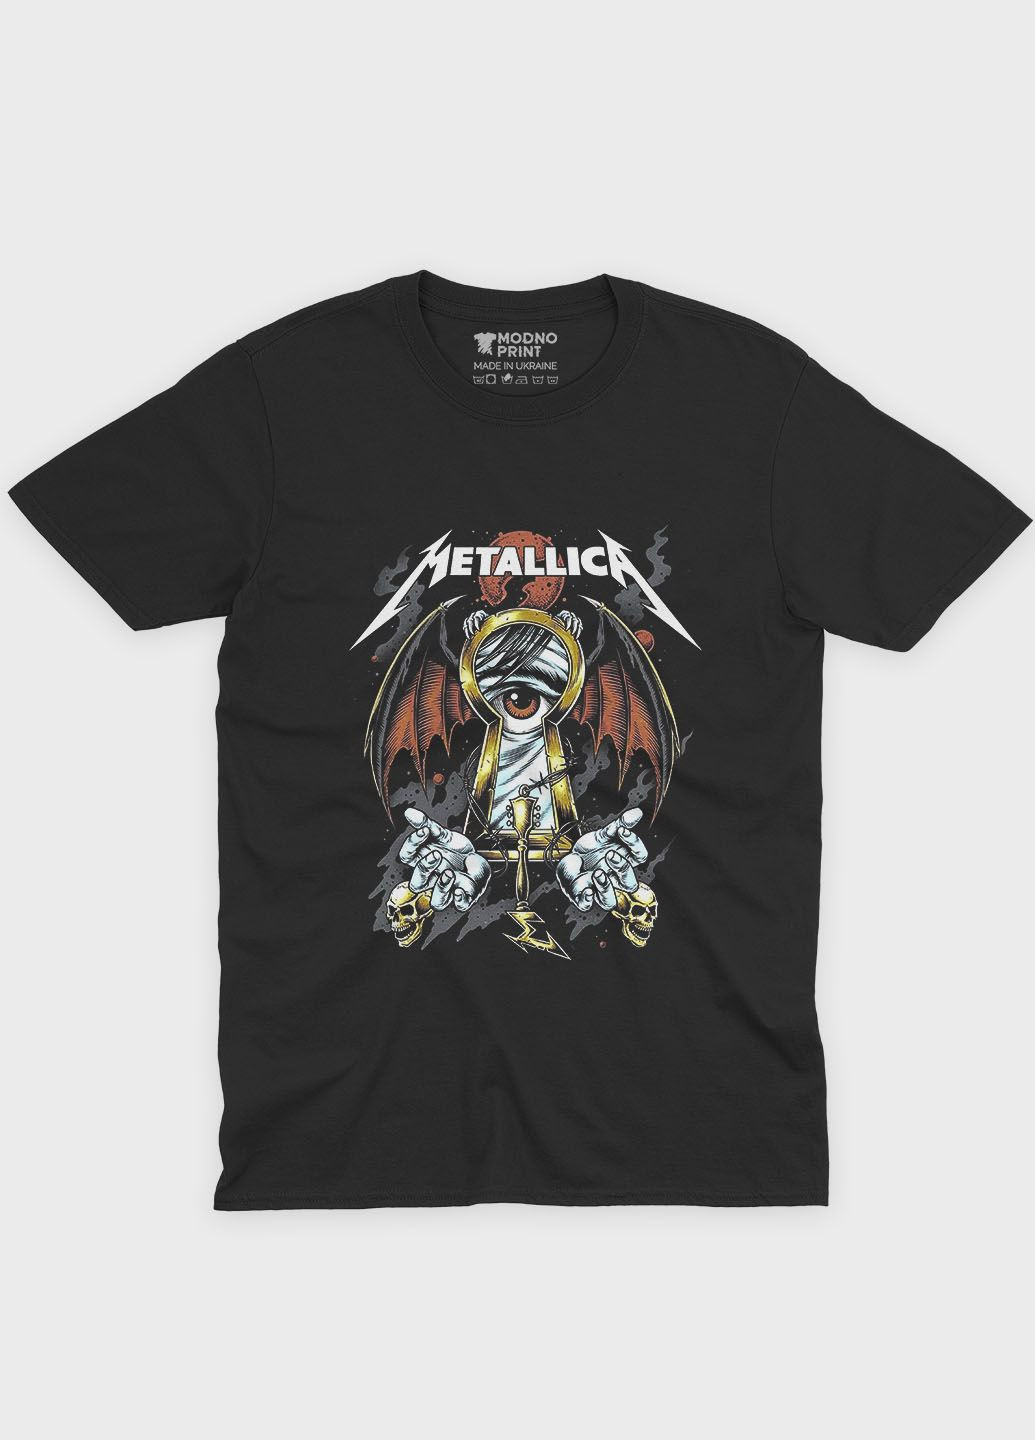 Черная летняя женская футболка с рок-принтом "metallica" (ts001-3-bl-004-2-196-f) Modno